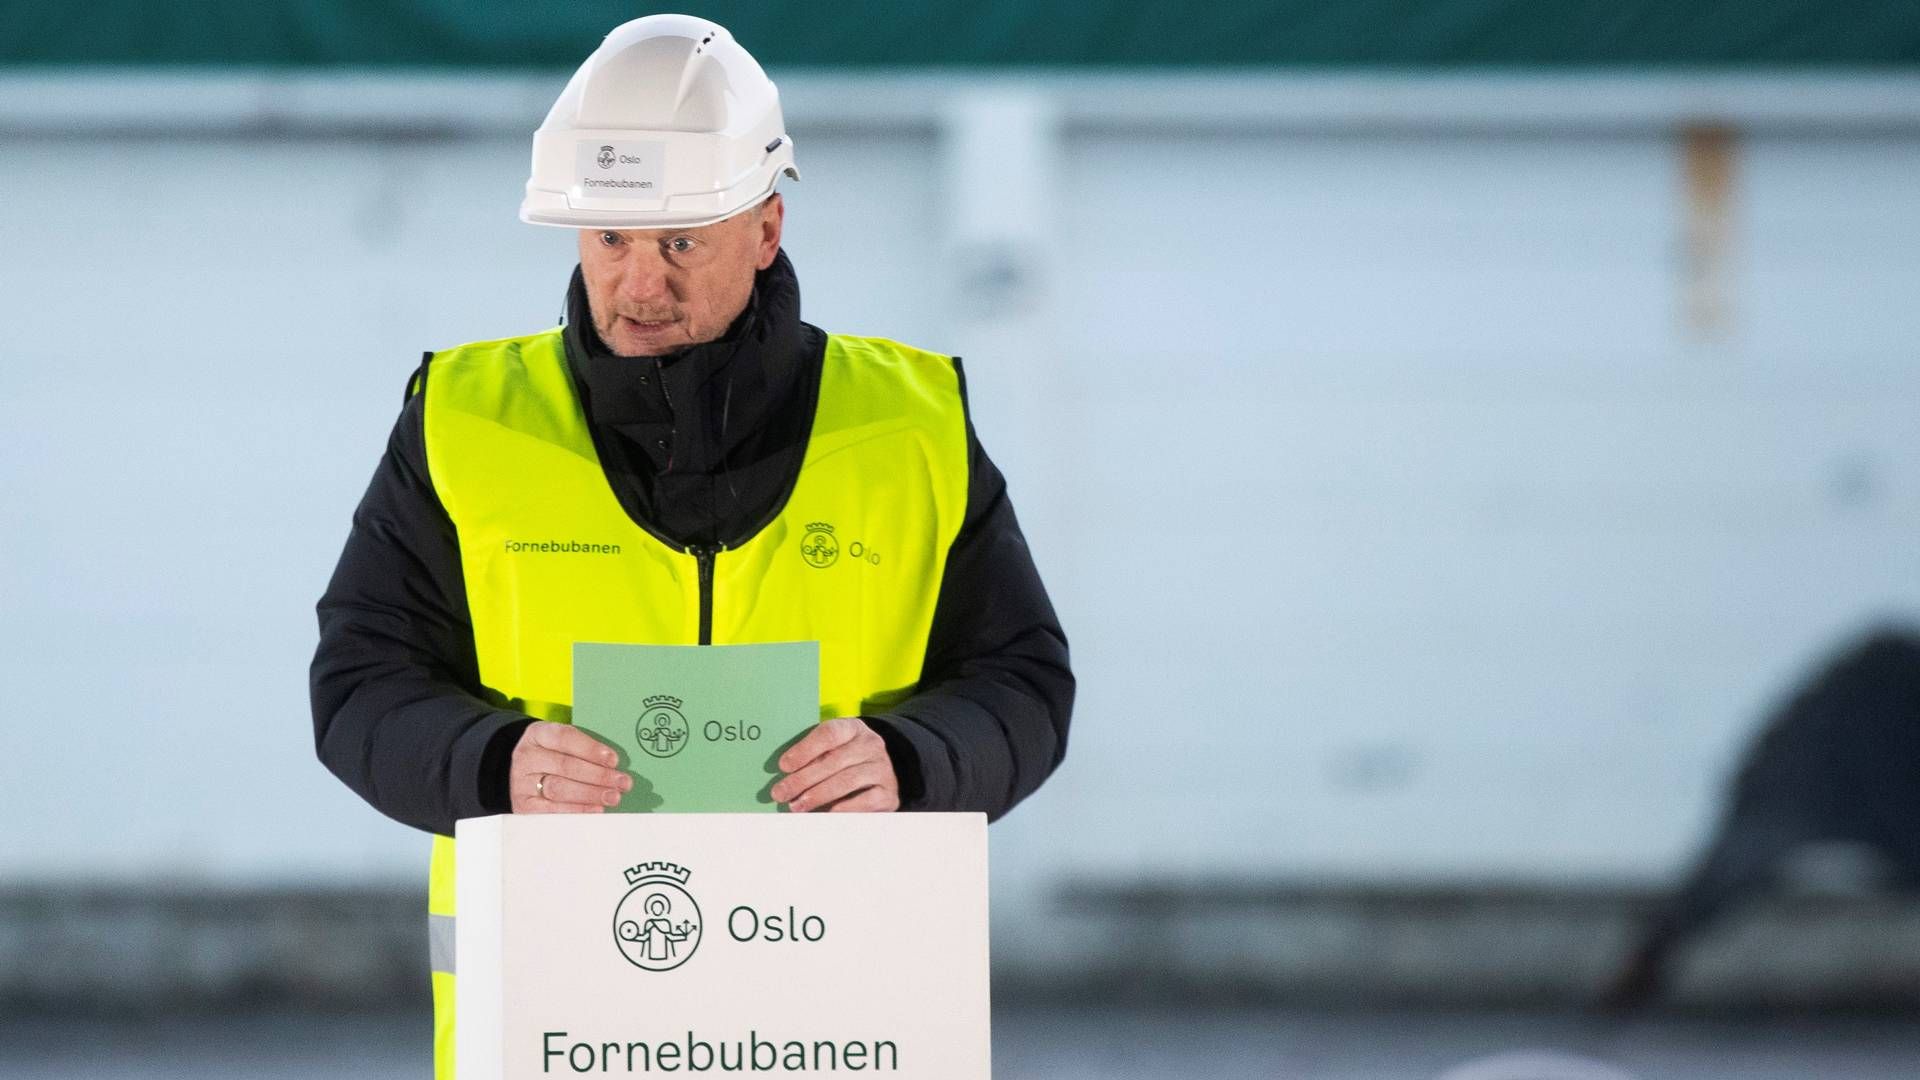 VIL HA SPLEISELAG: Byrådsleder Raymond Johansen mener Oslo tar for stor del av regningen for Fornebubanen. | Foto: Terje Pedersen, NTB